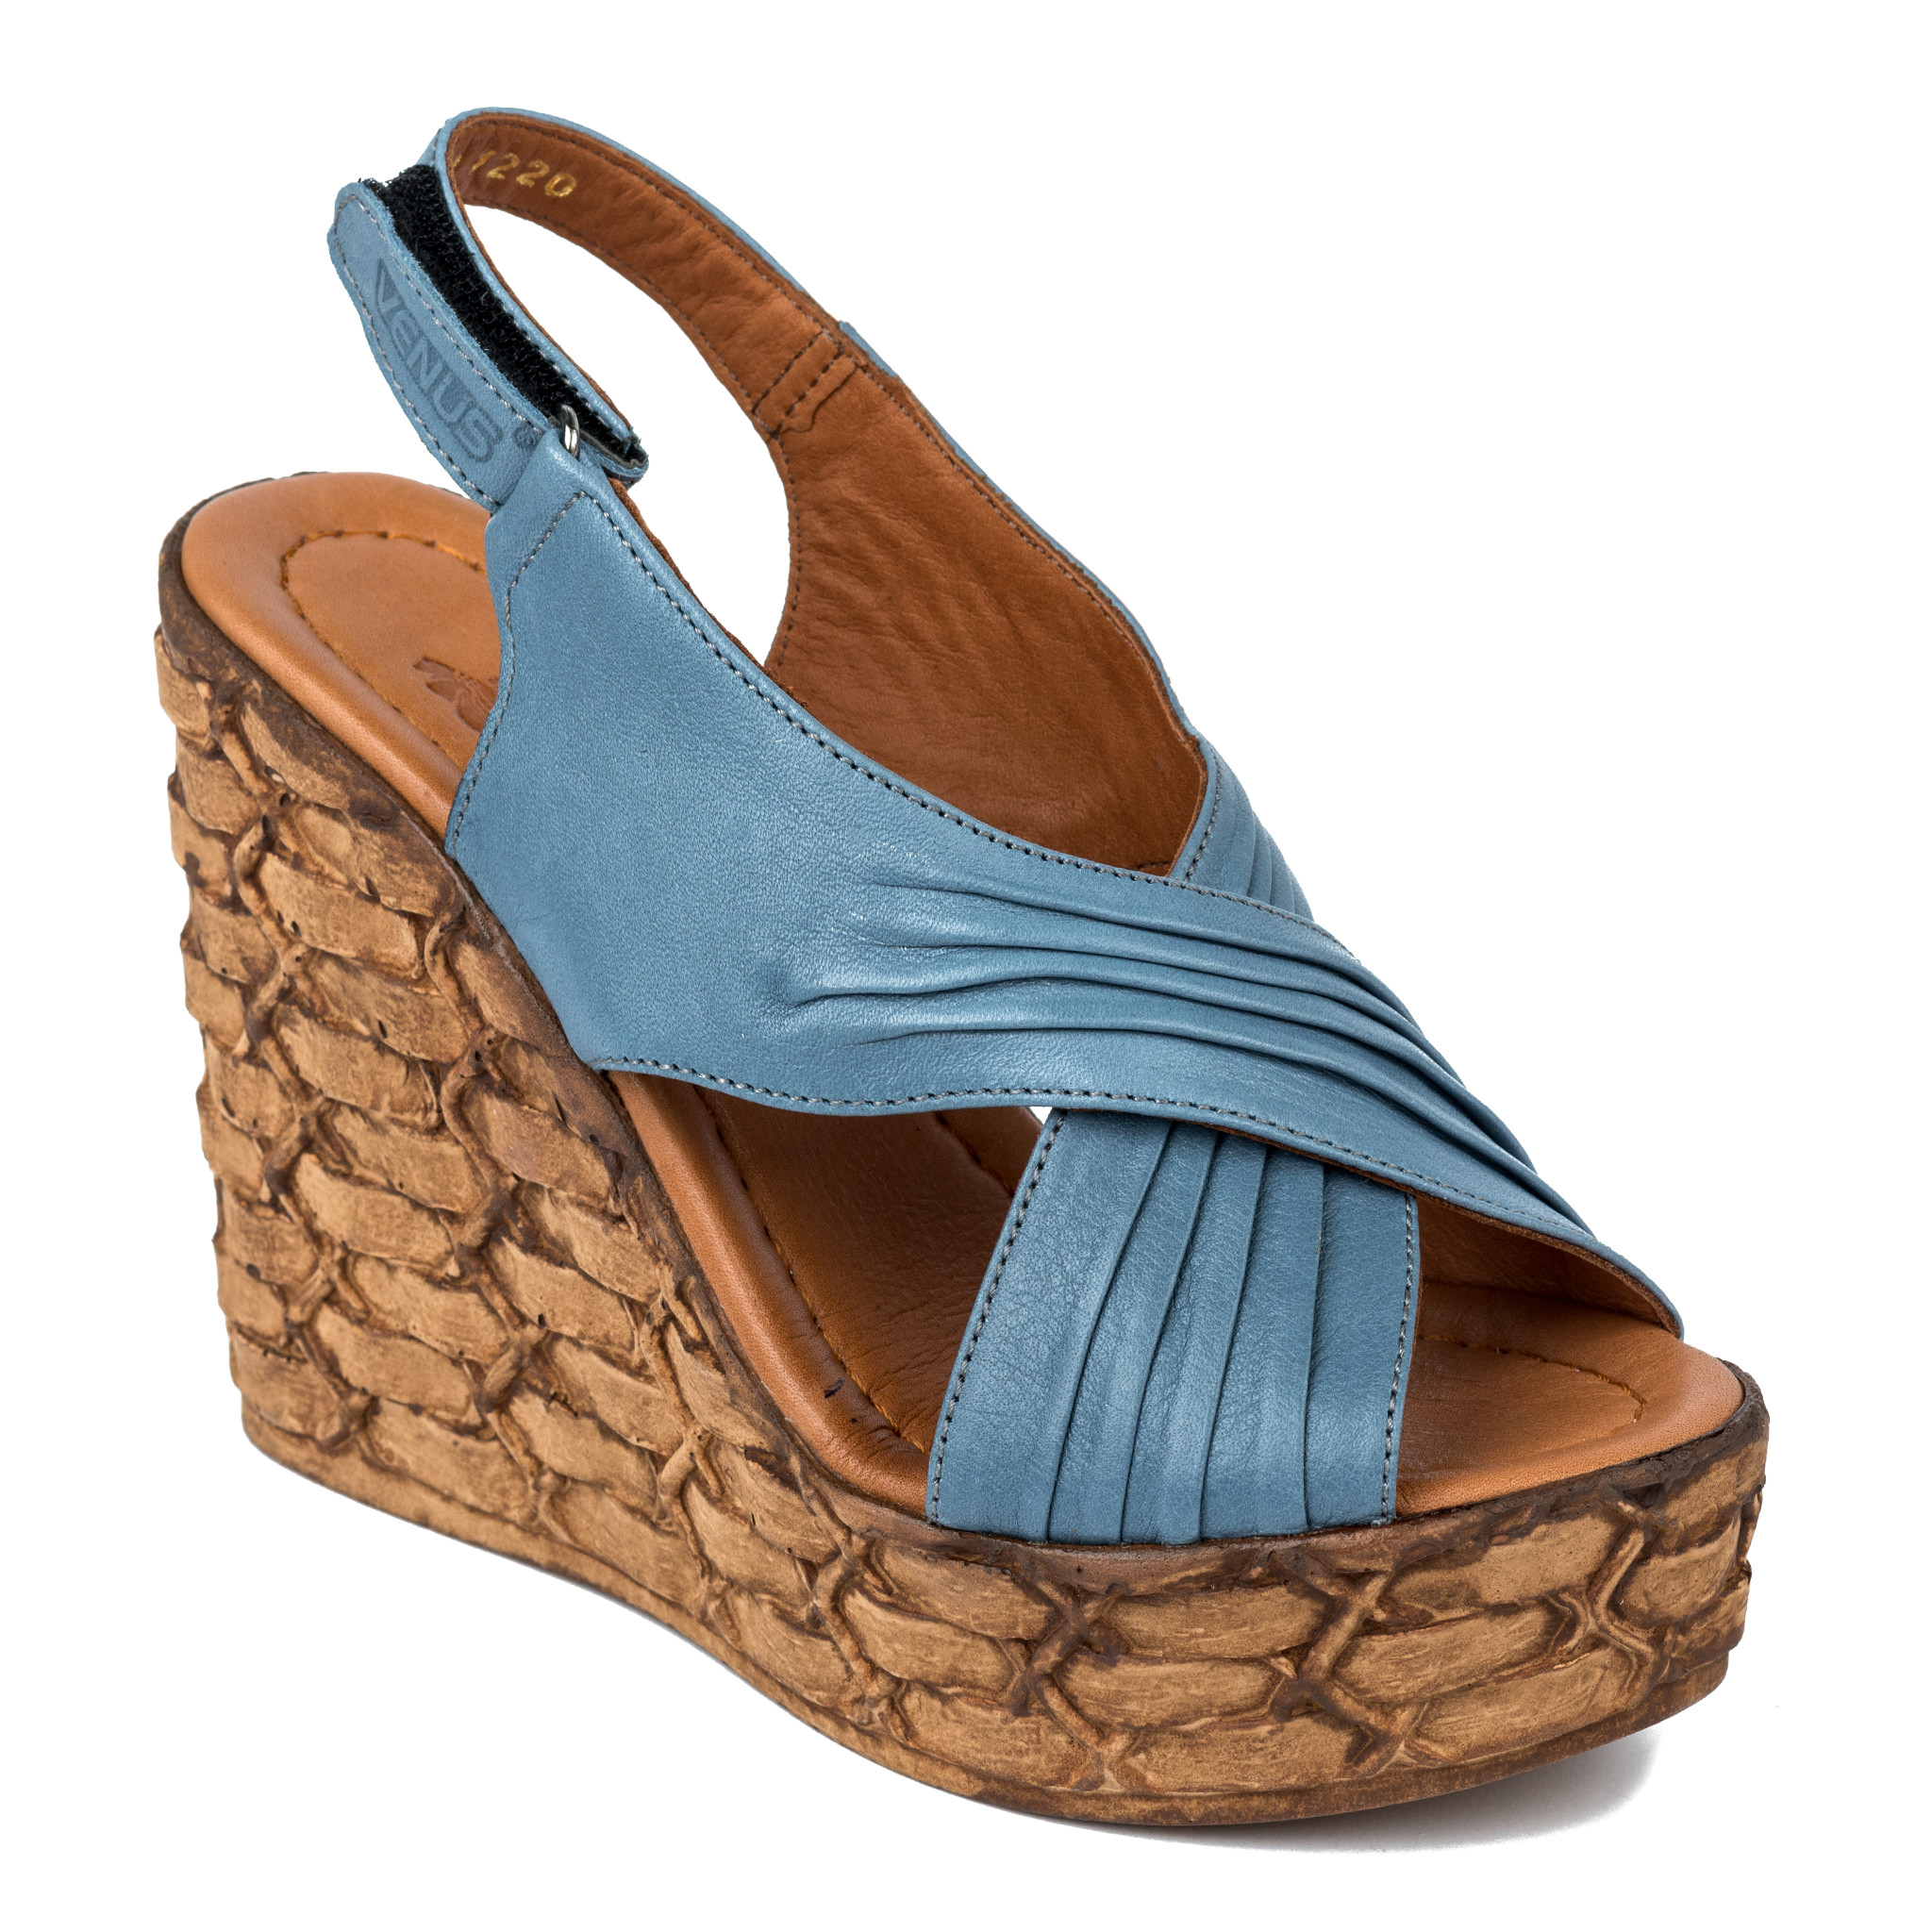 Women sandals A189 - BLUE